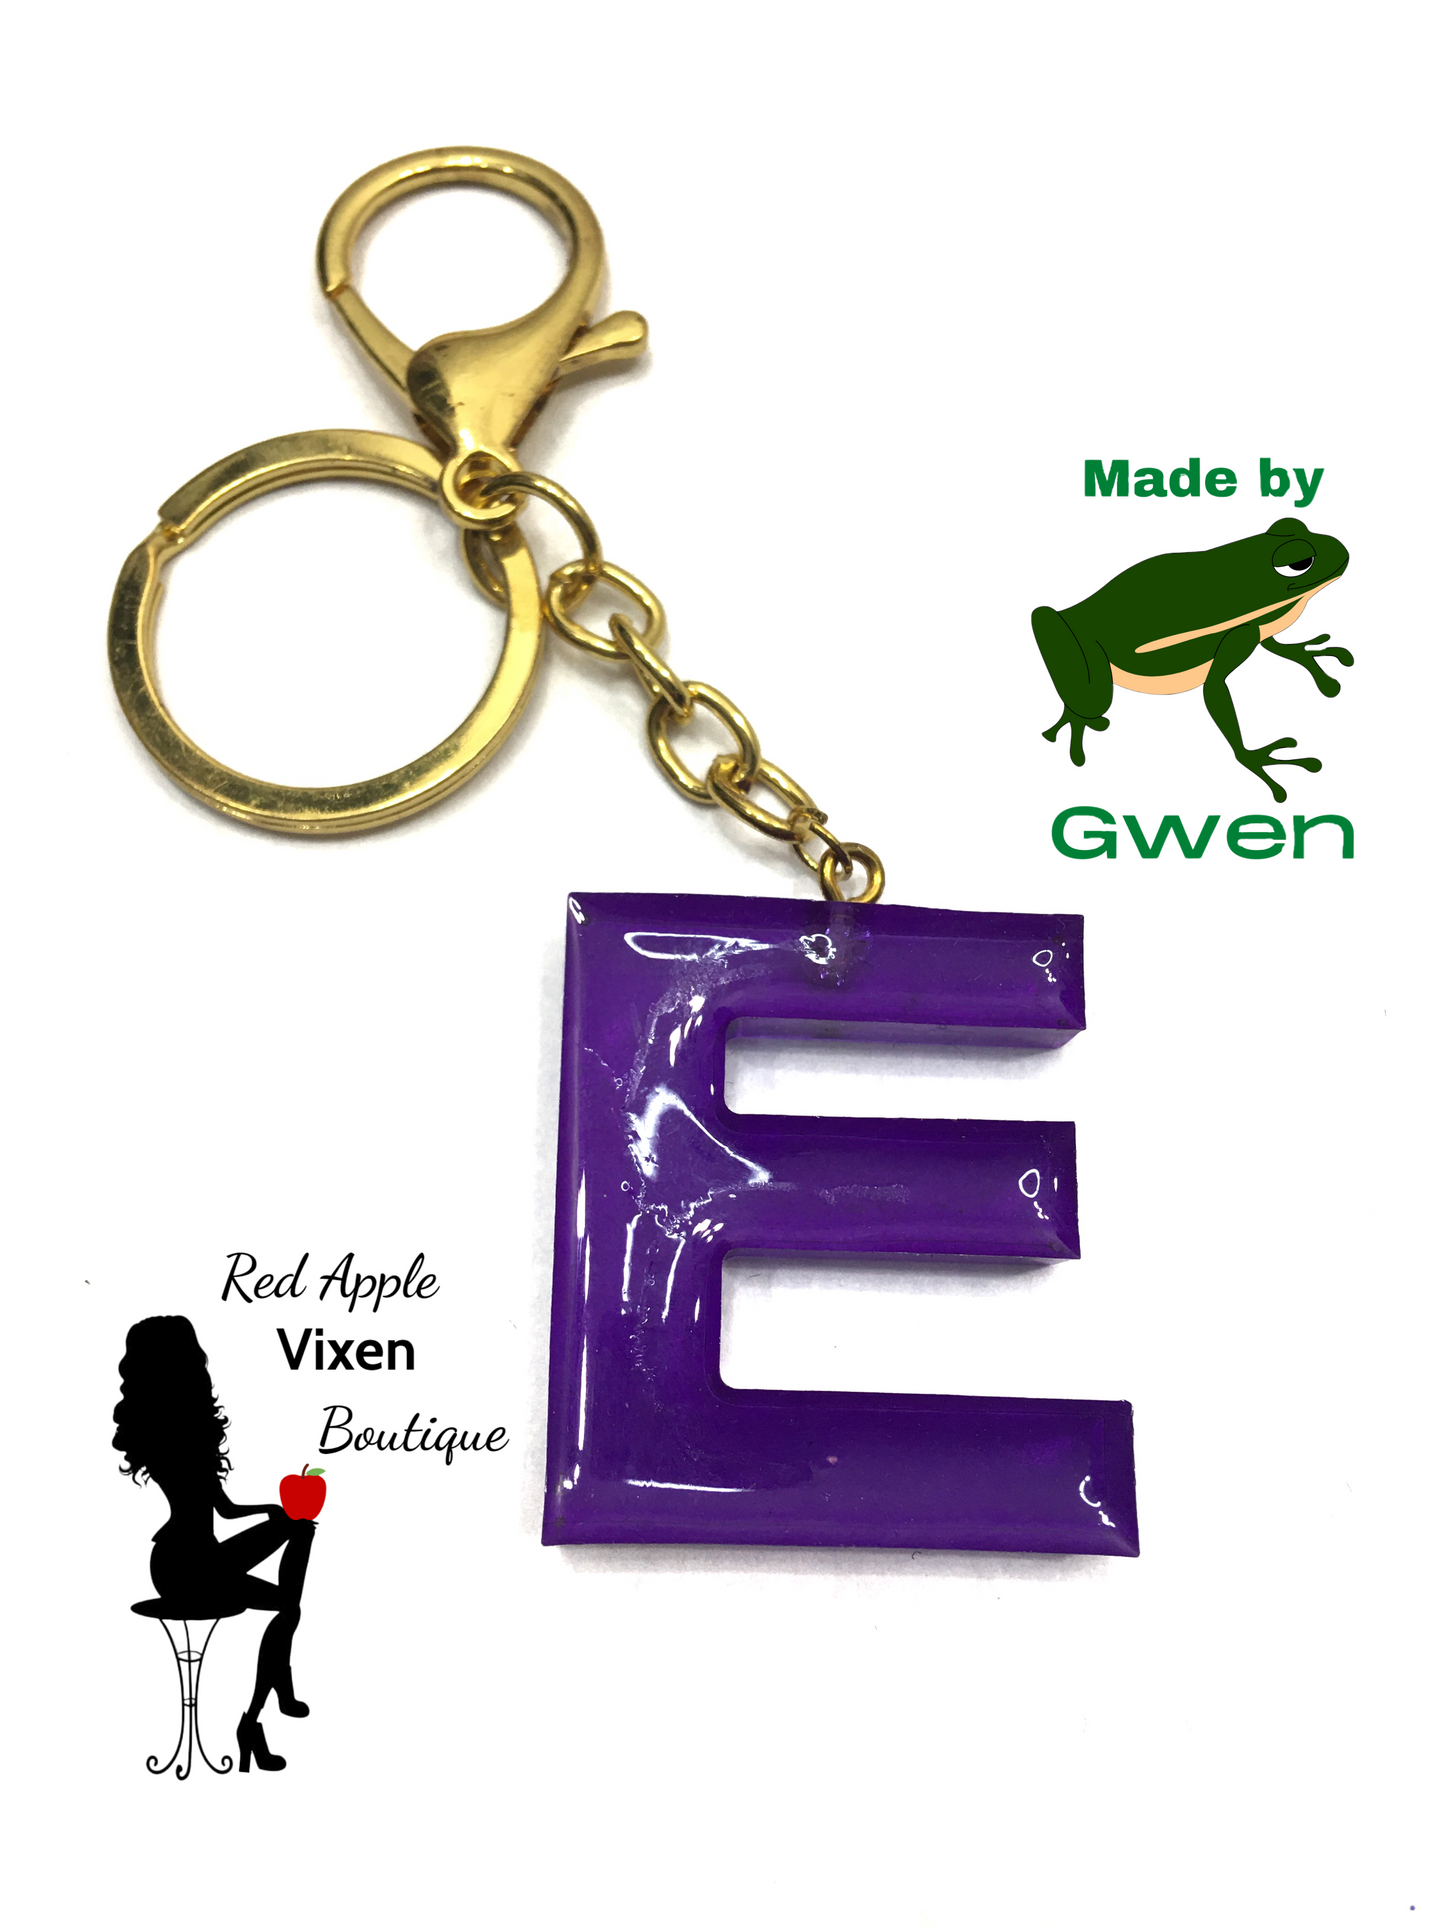 Letter E Resin Key Chain - Red Apple Vixen Boutique